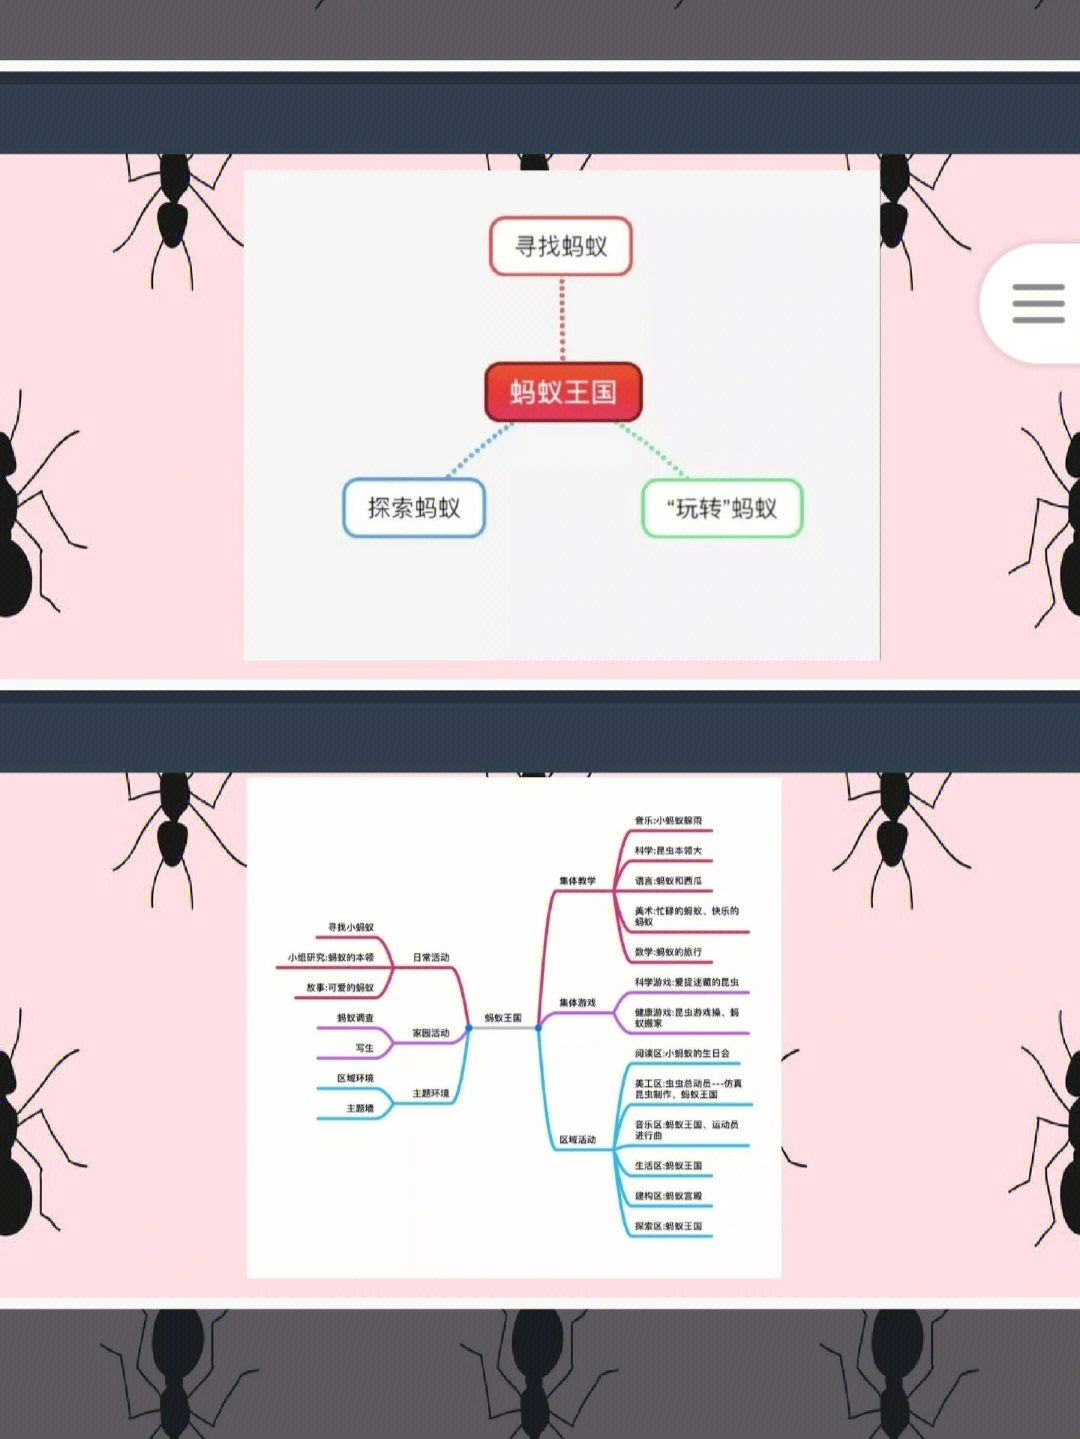 蚂蚁主题课程网络图图片